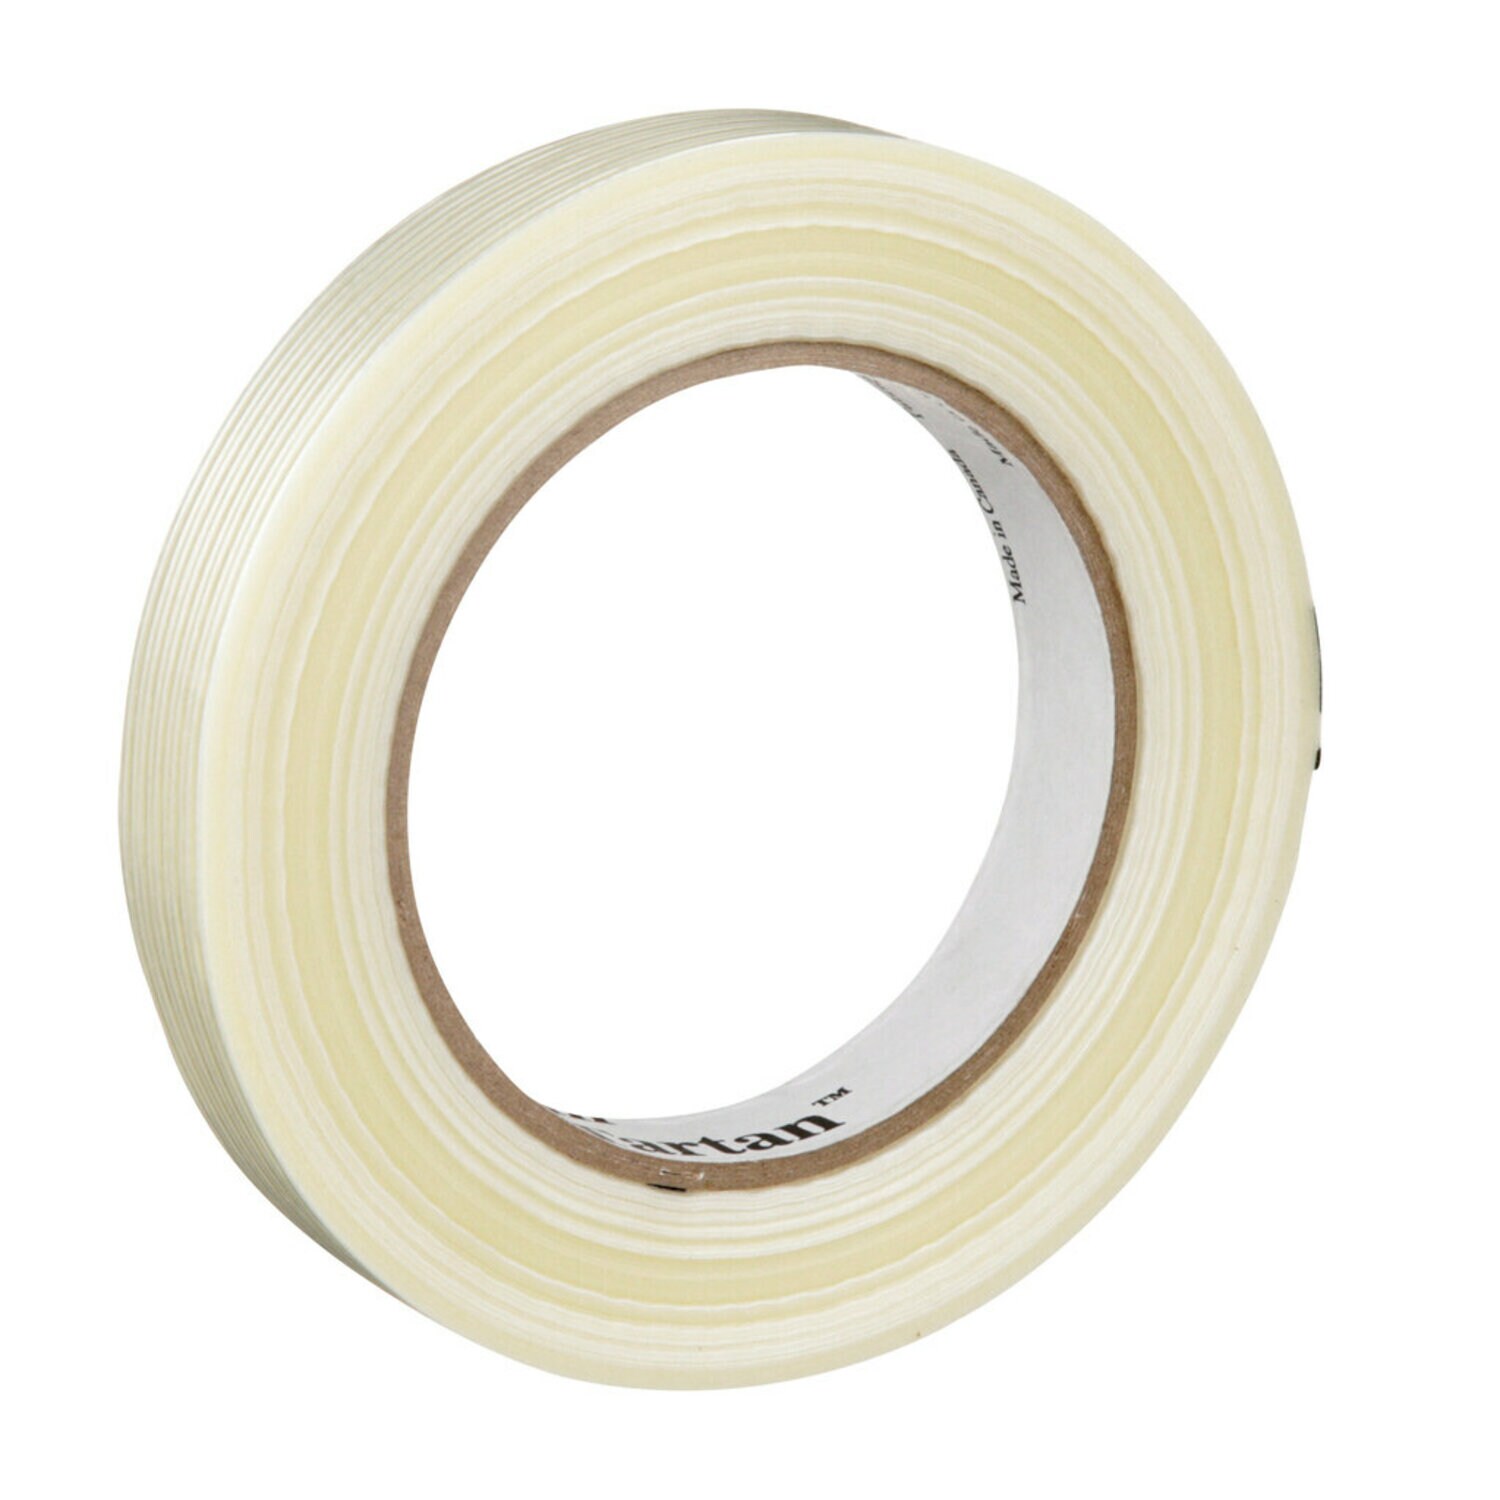 7000028886 - Tartan Filament Tape 8934, Clear, 18 mm x 55 m, 4 mil, 48 rolls per
case